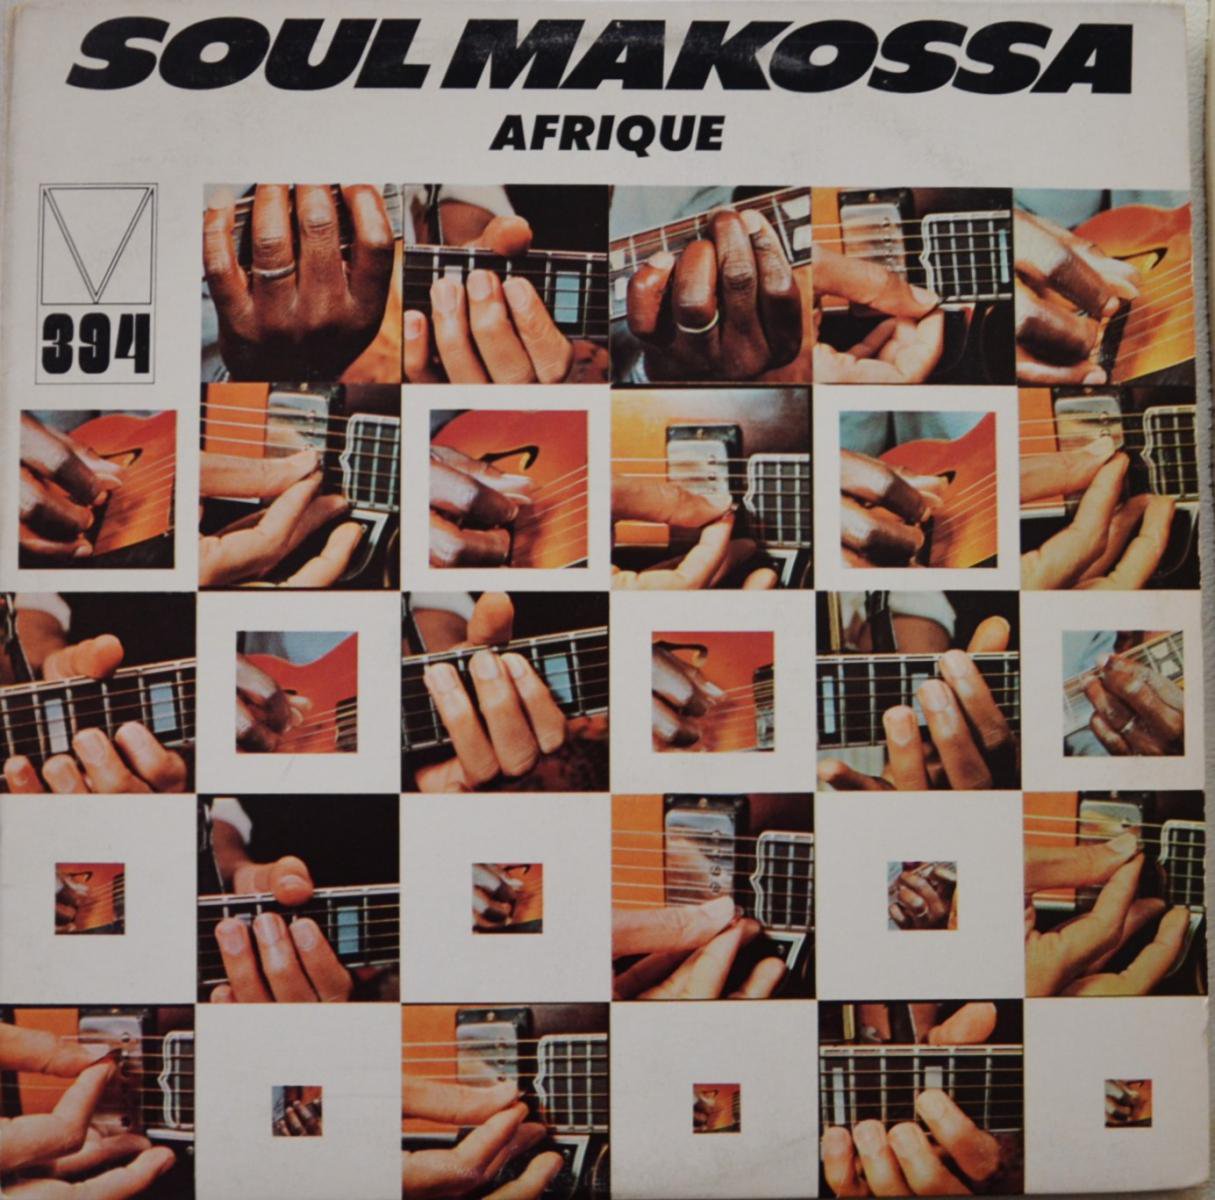 AFRIQUE / SOUL MAKOSSA (LP)